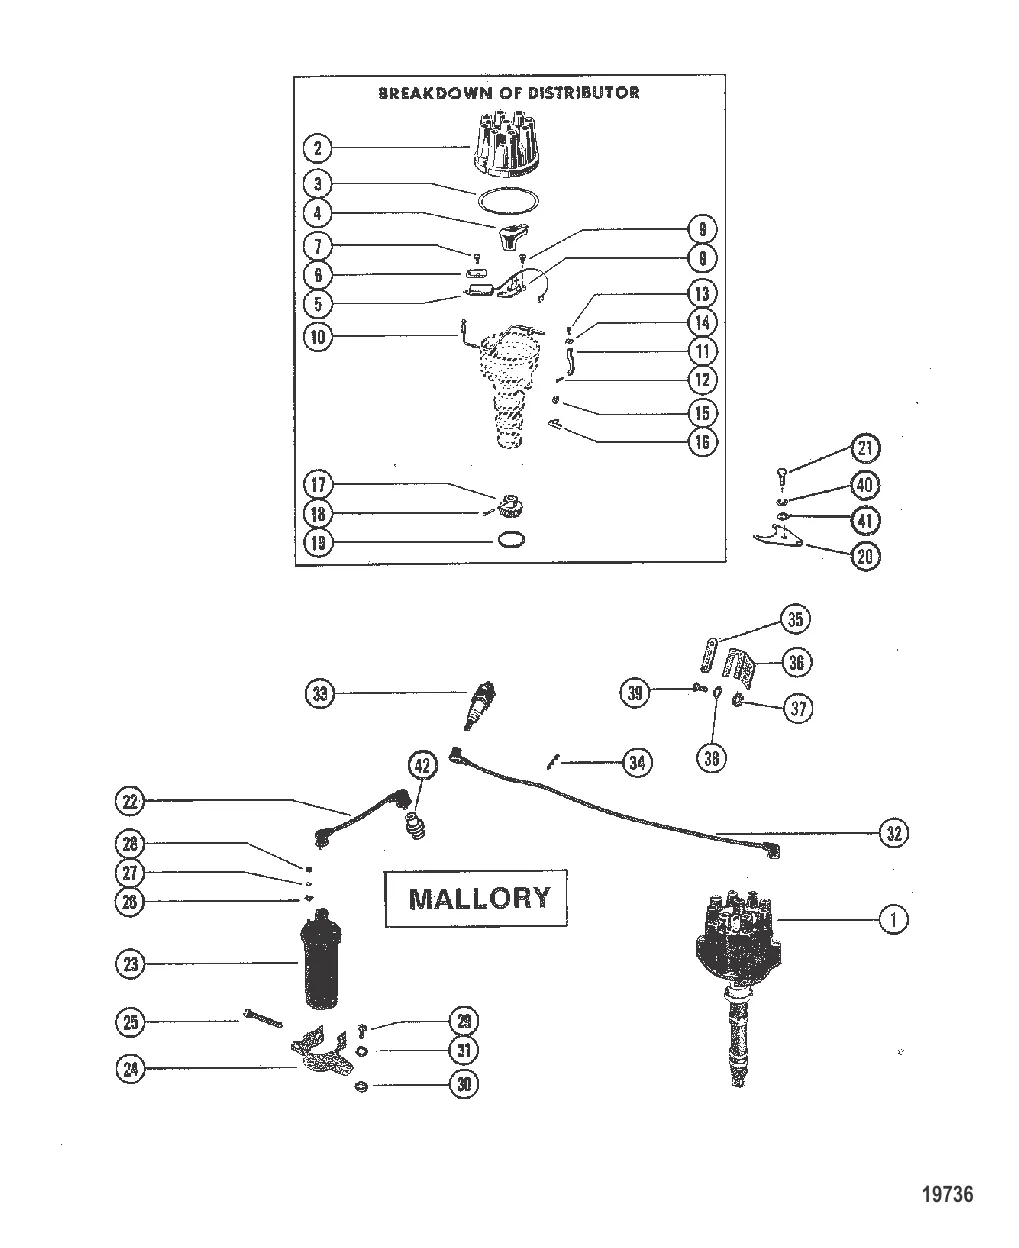 Распределитель и компоненты системы зажигания (Mallory)